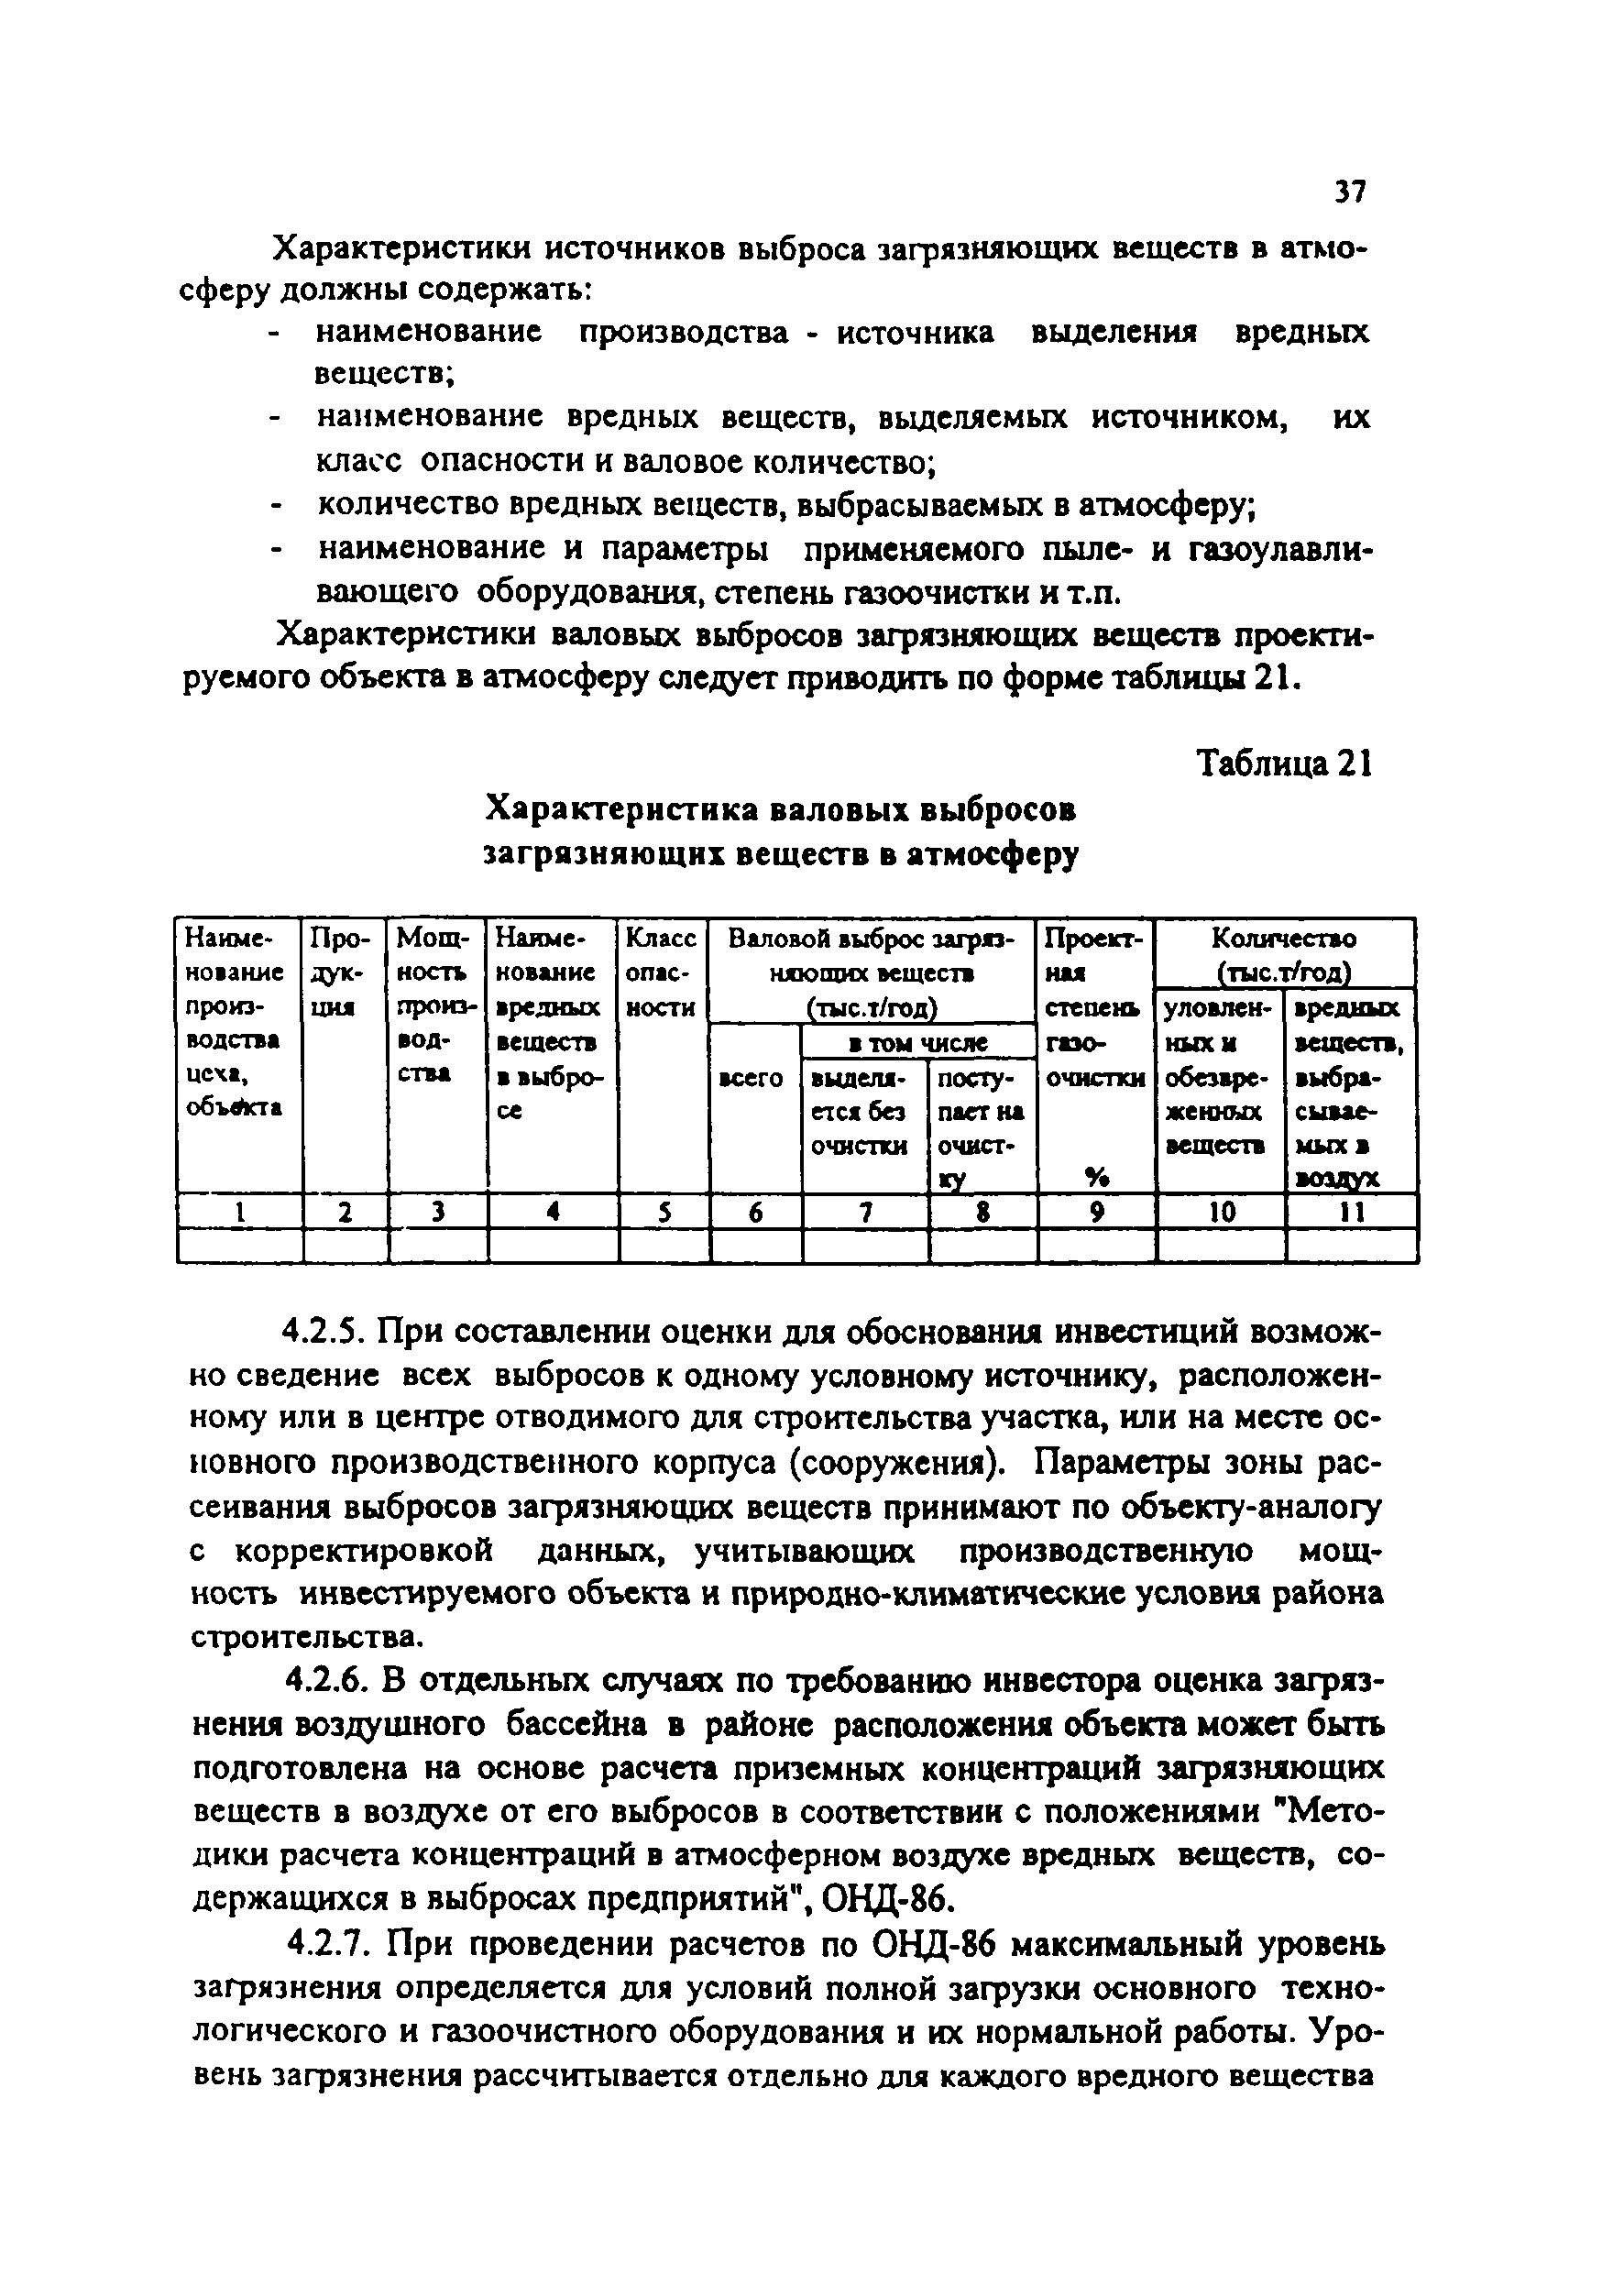 Практическое пособие к СП 11-101-95